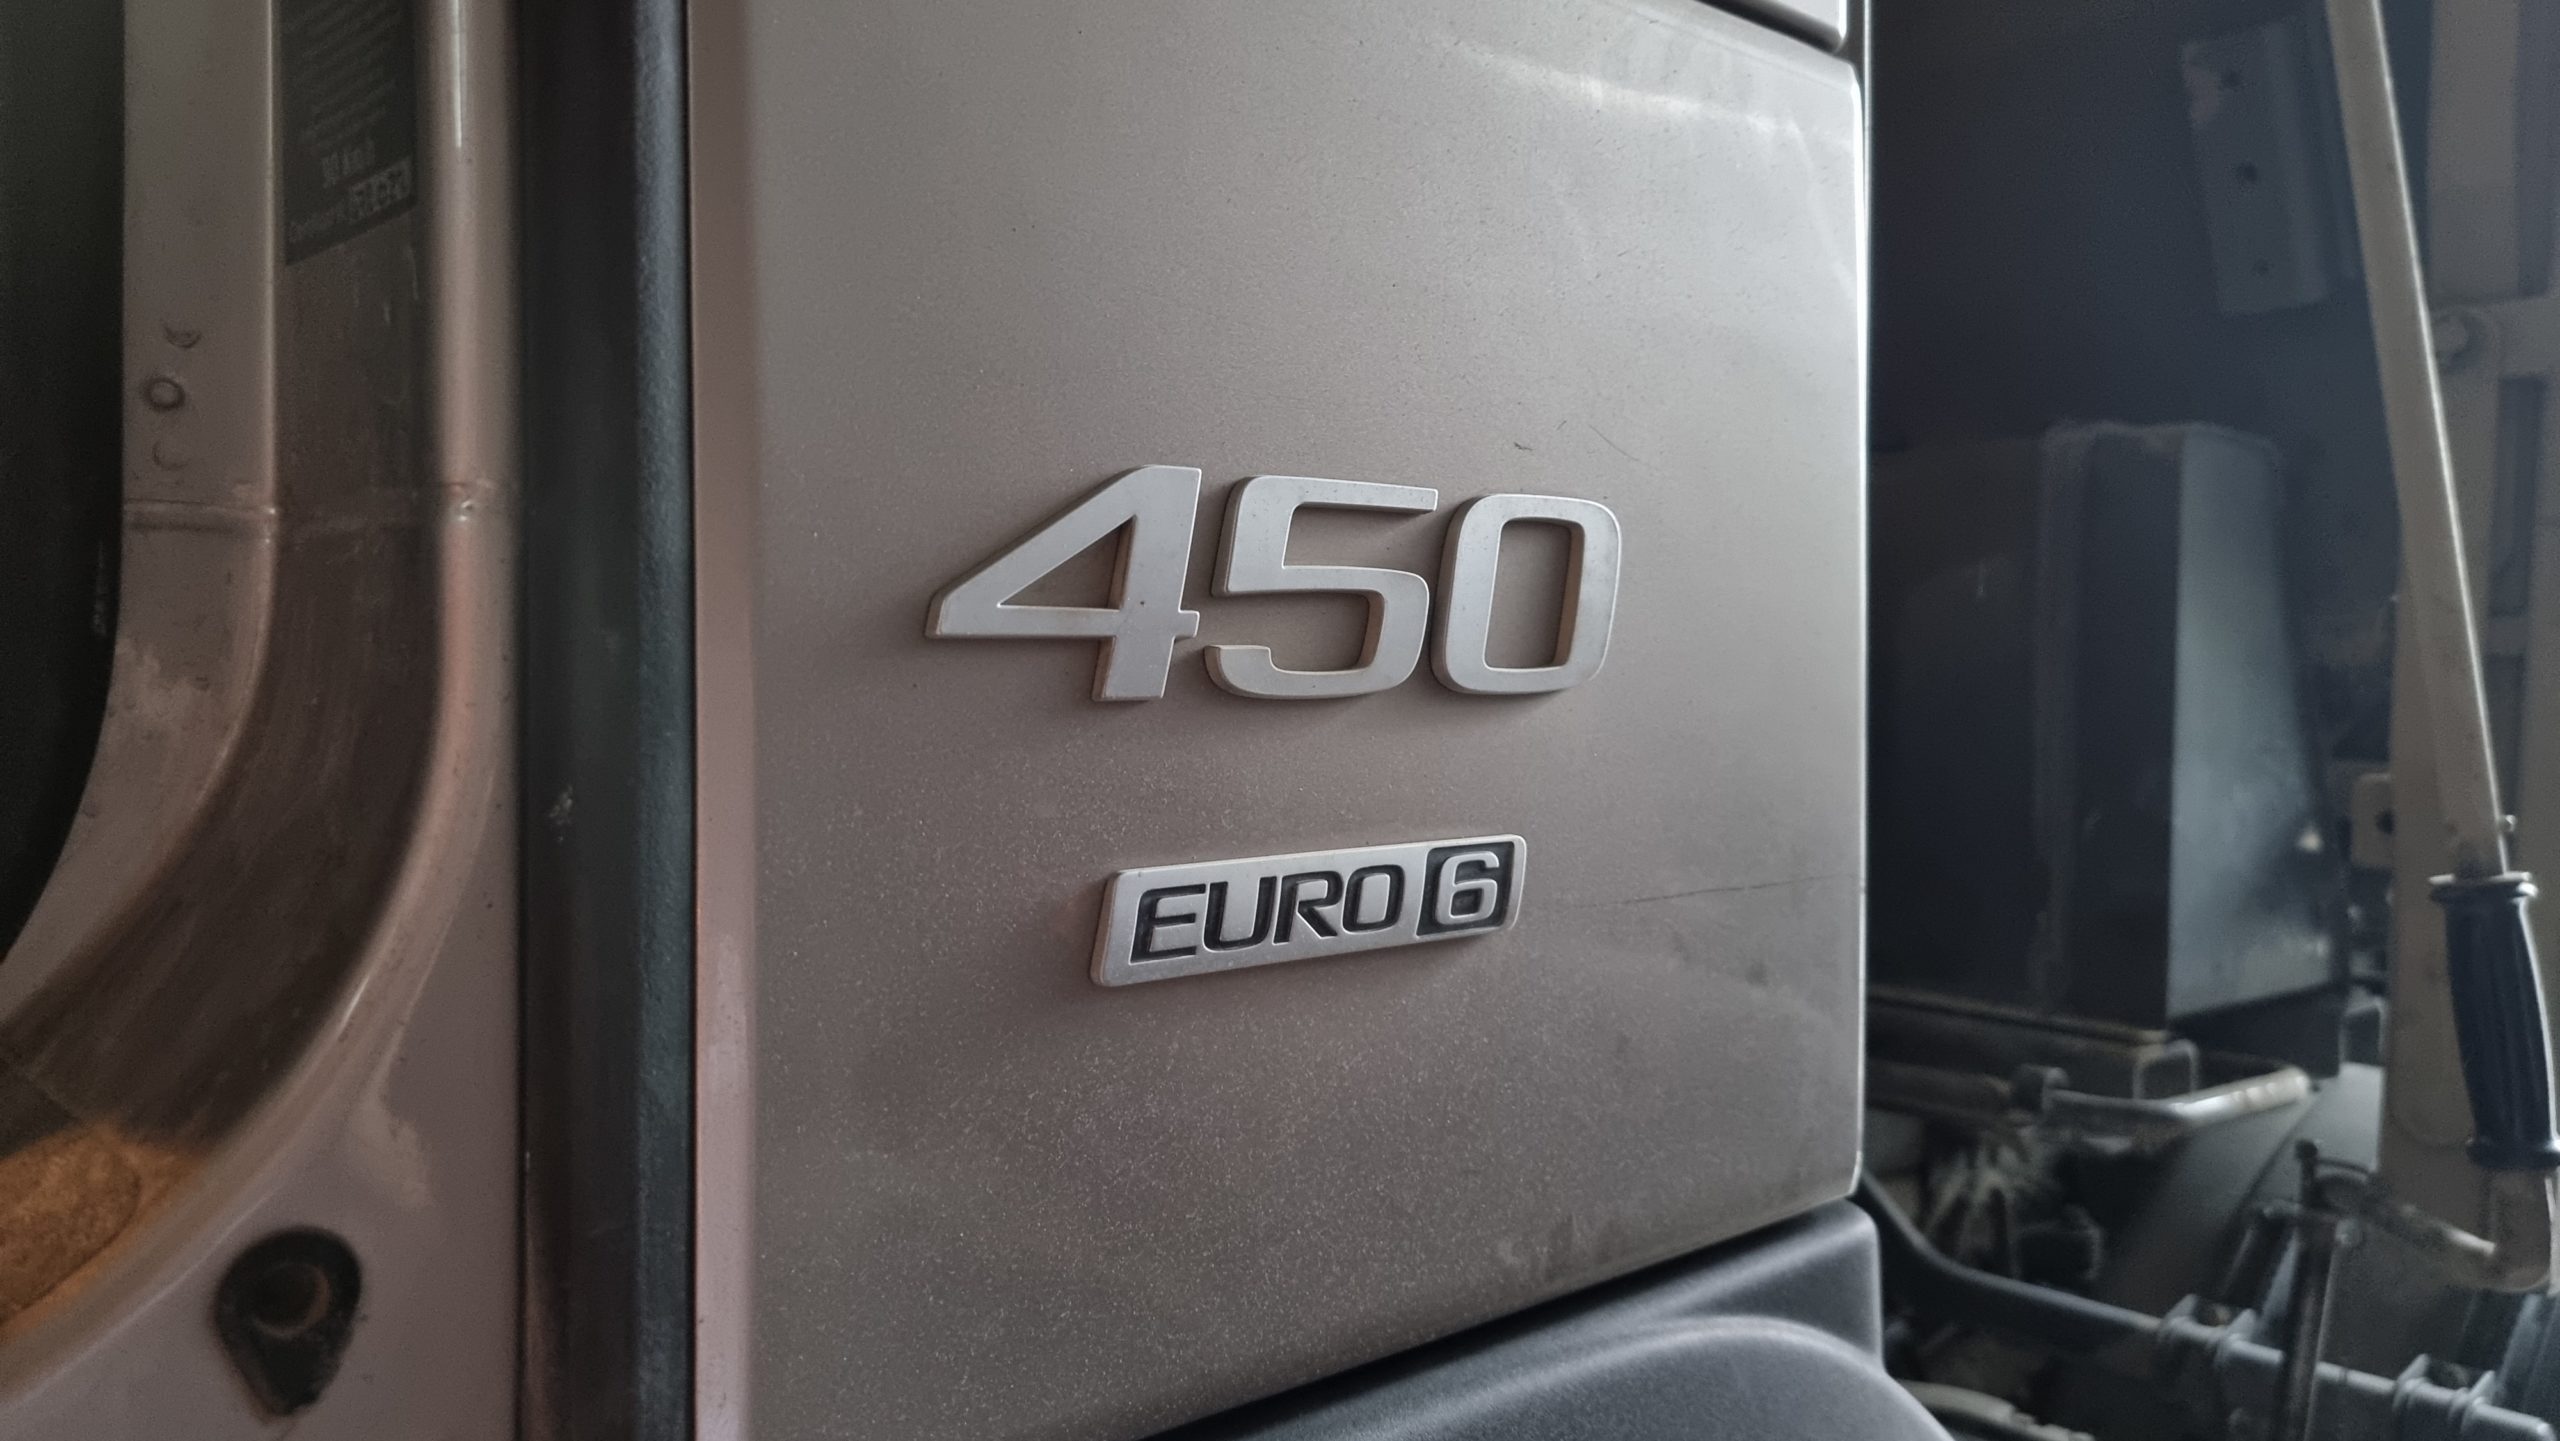 Défaut système Adblue Volvo Euro 6 code ACM P218F92 et défaut FAP seuil critique